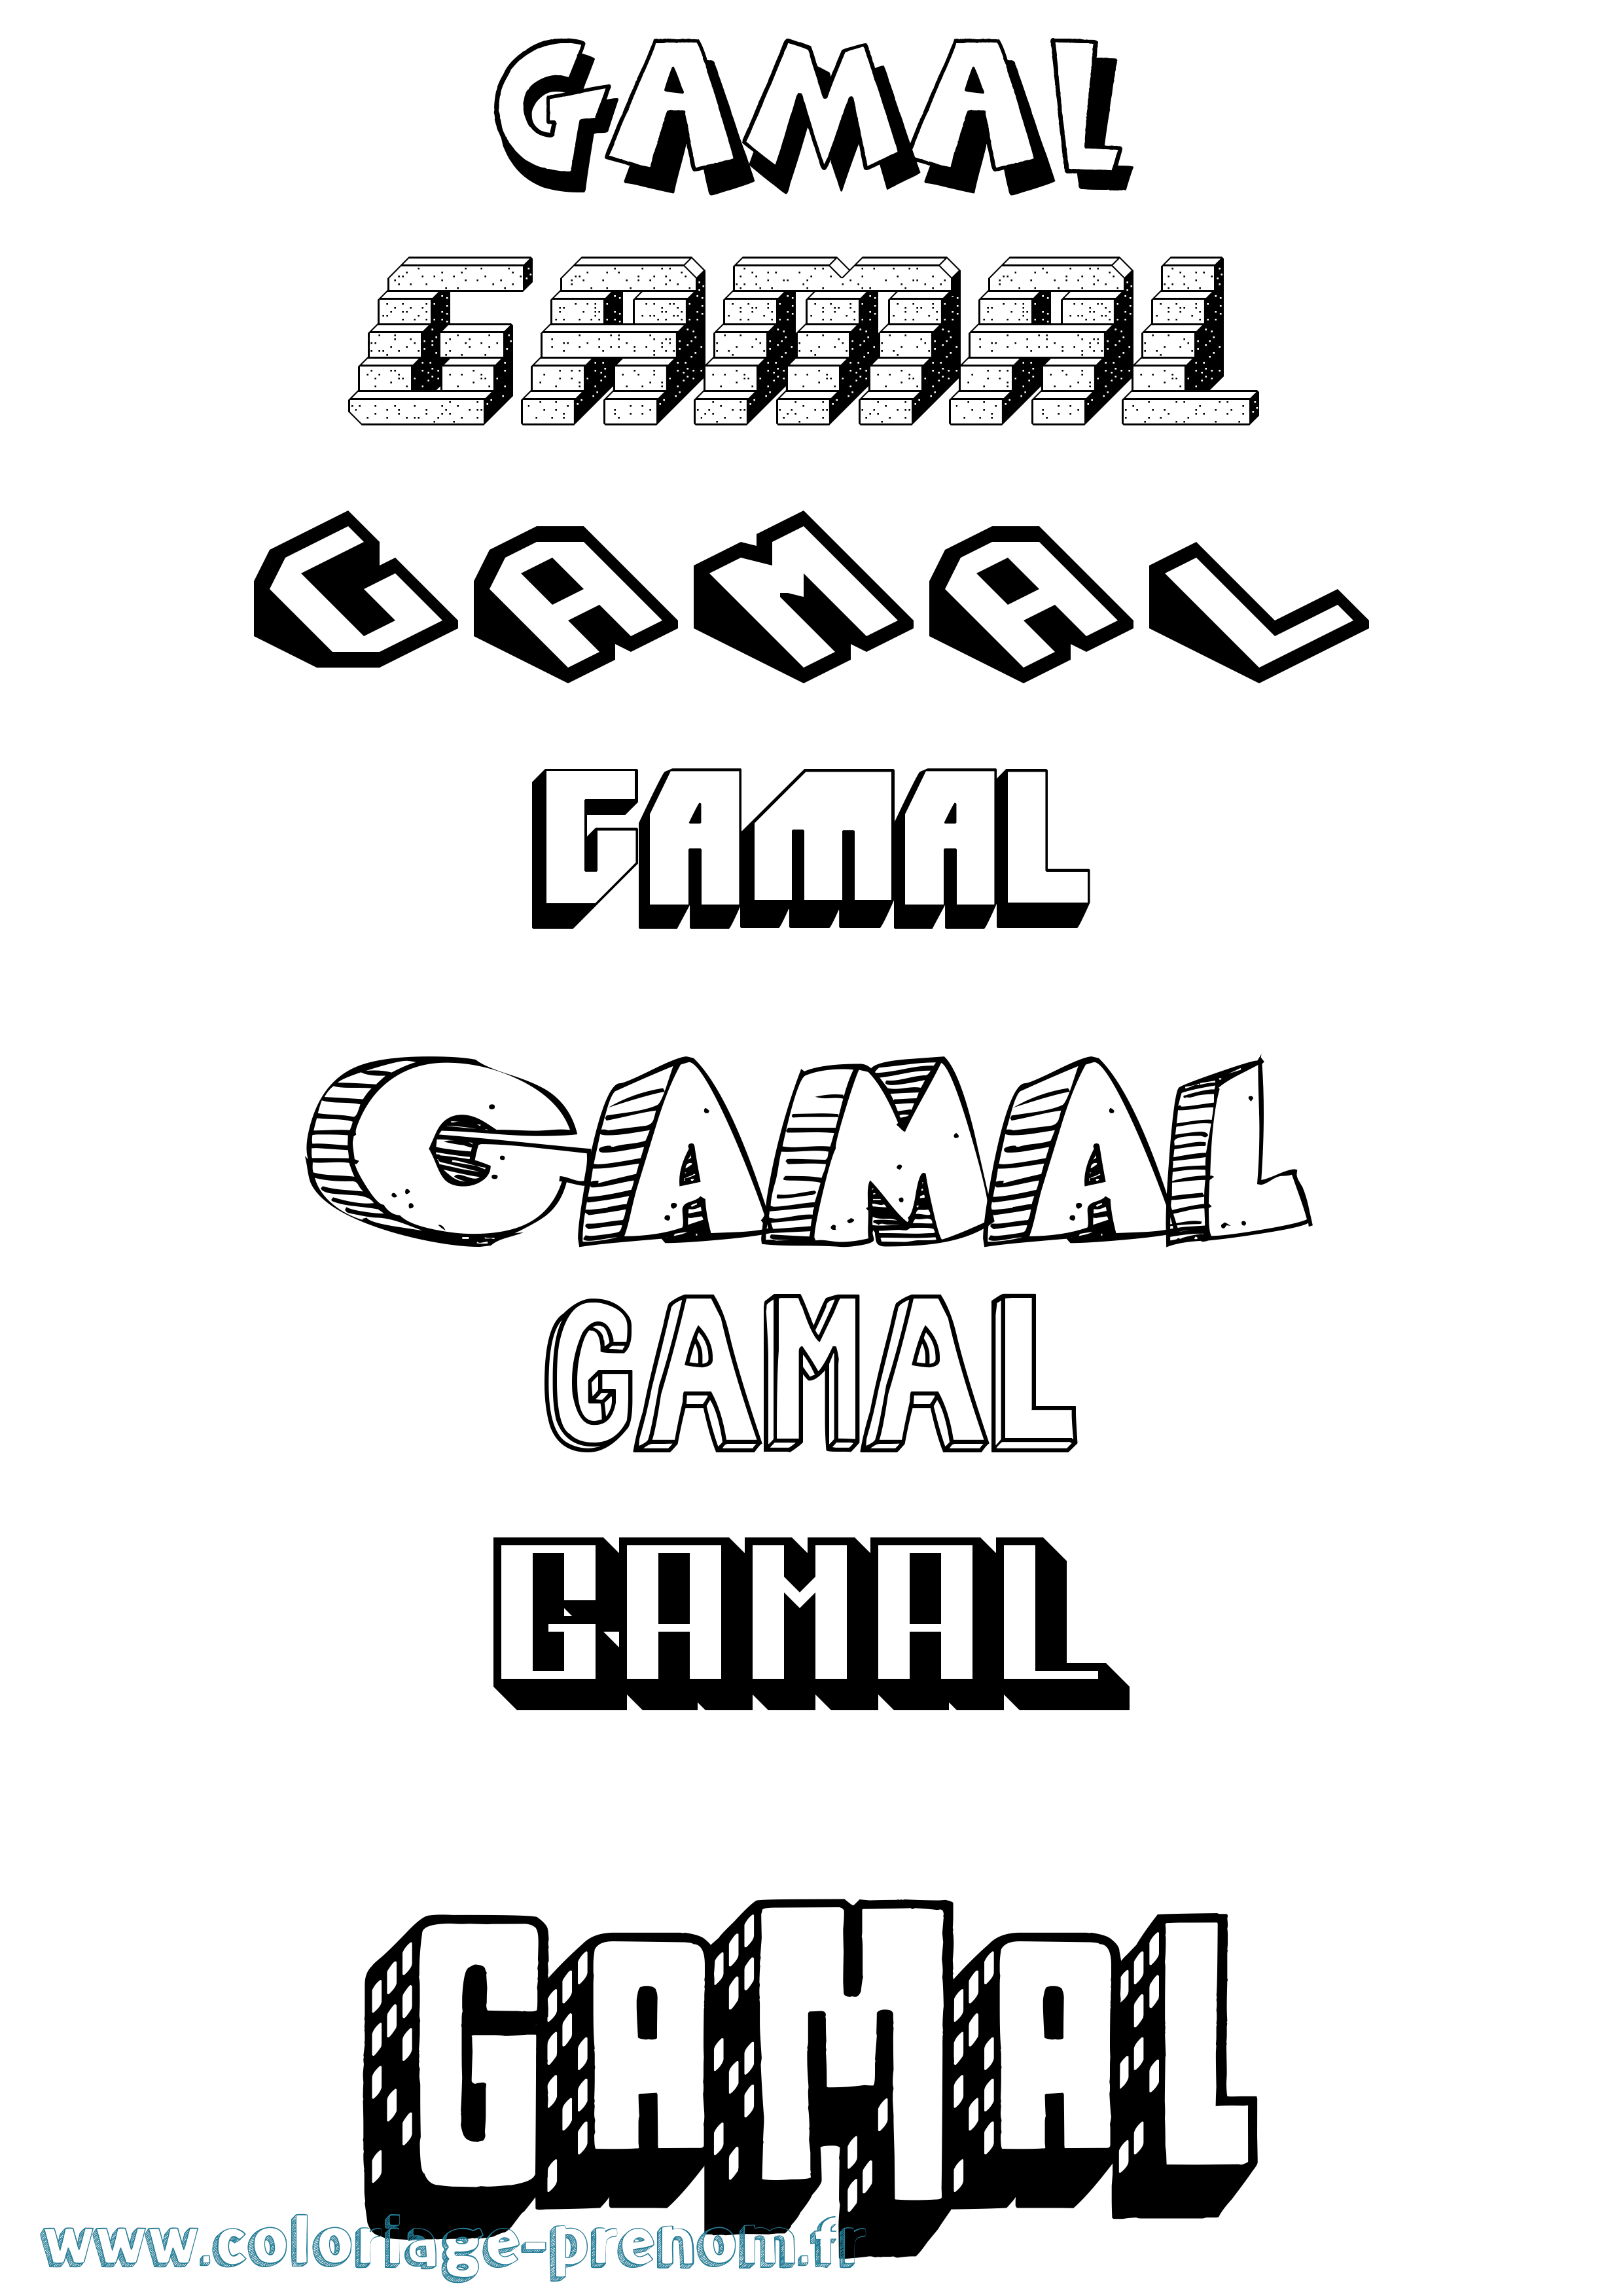 Coloriage prénom Gamal Effet 3D